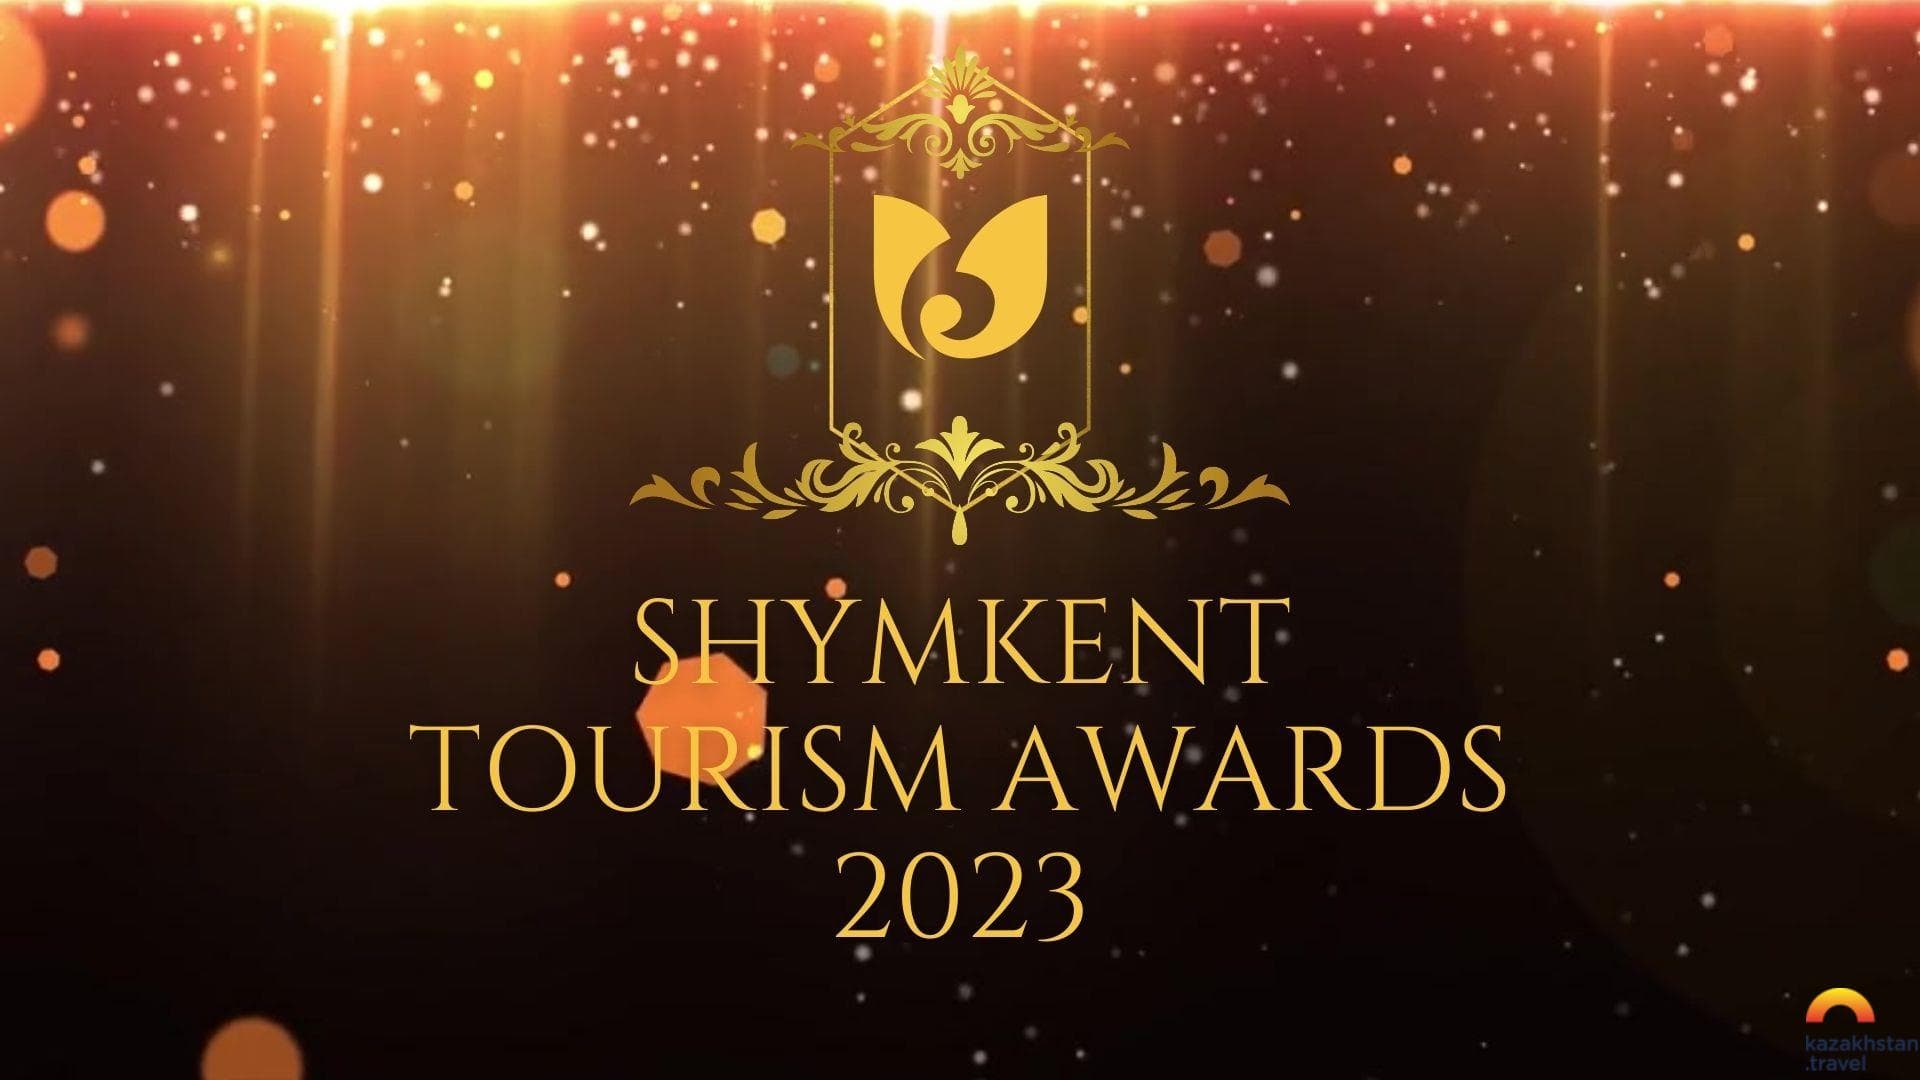 Shymkent Tourism Awards - 2023